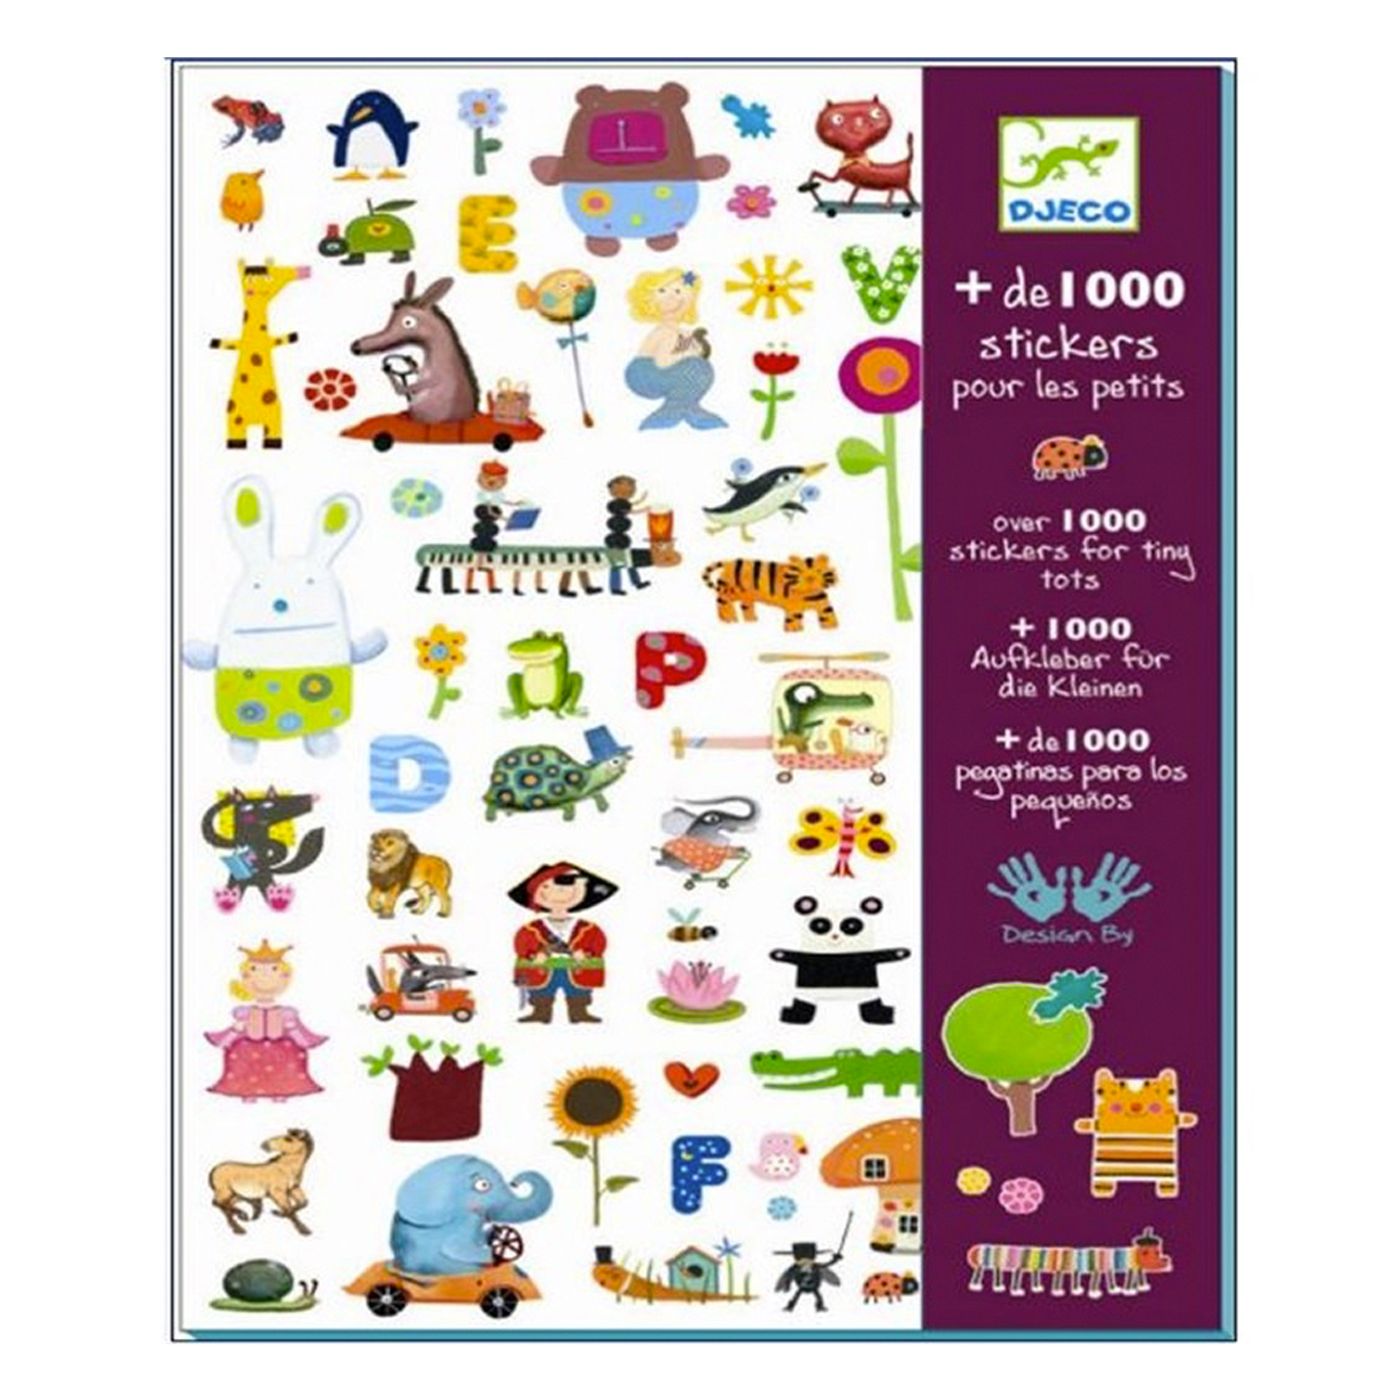  Djeco Çıkartmalar / 1000 Stickers For Little Ones